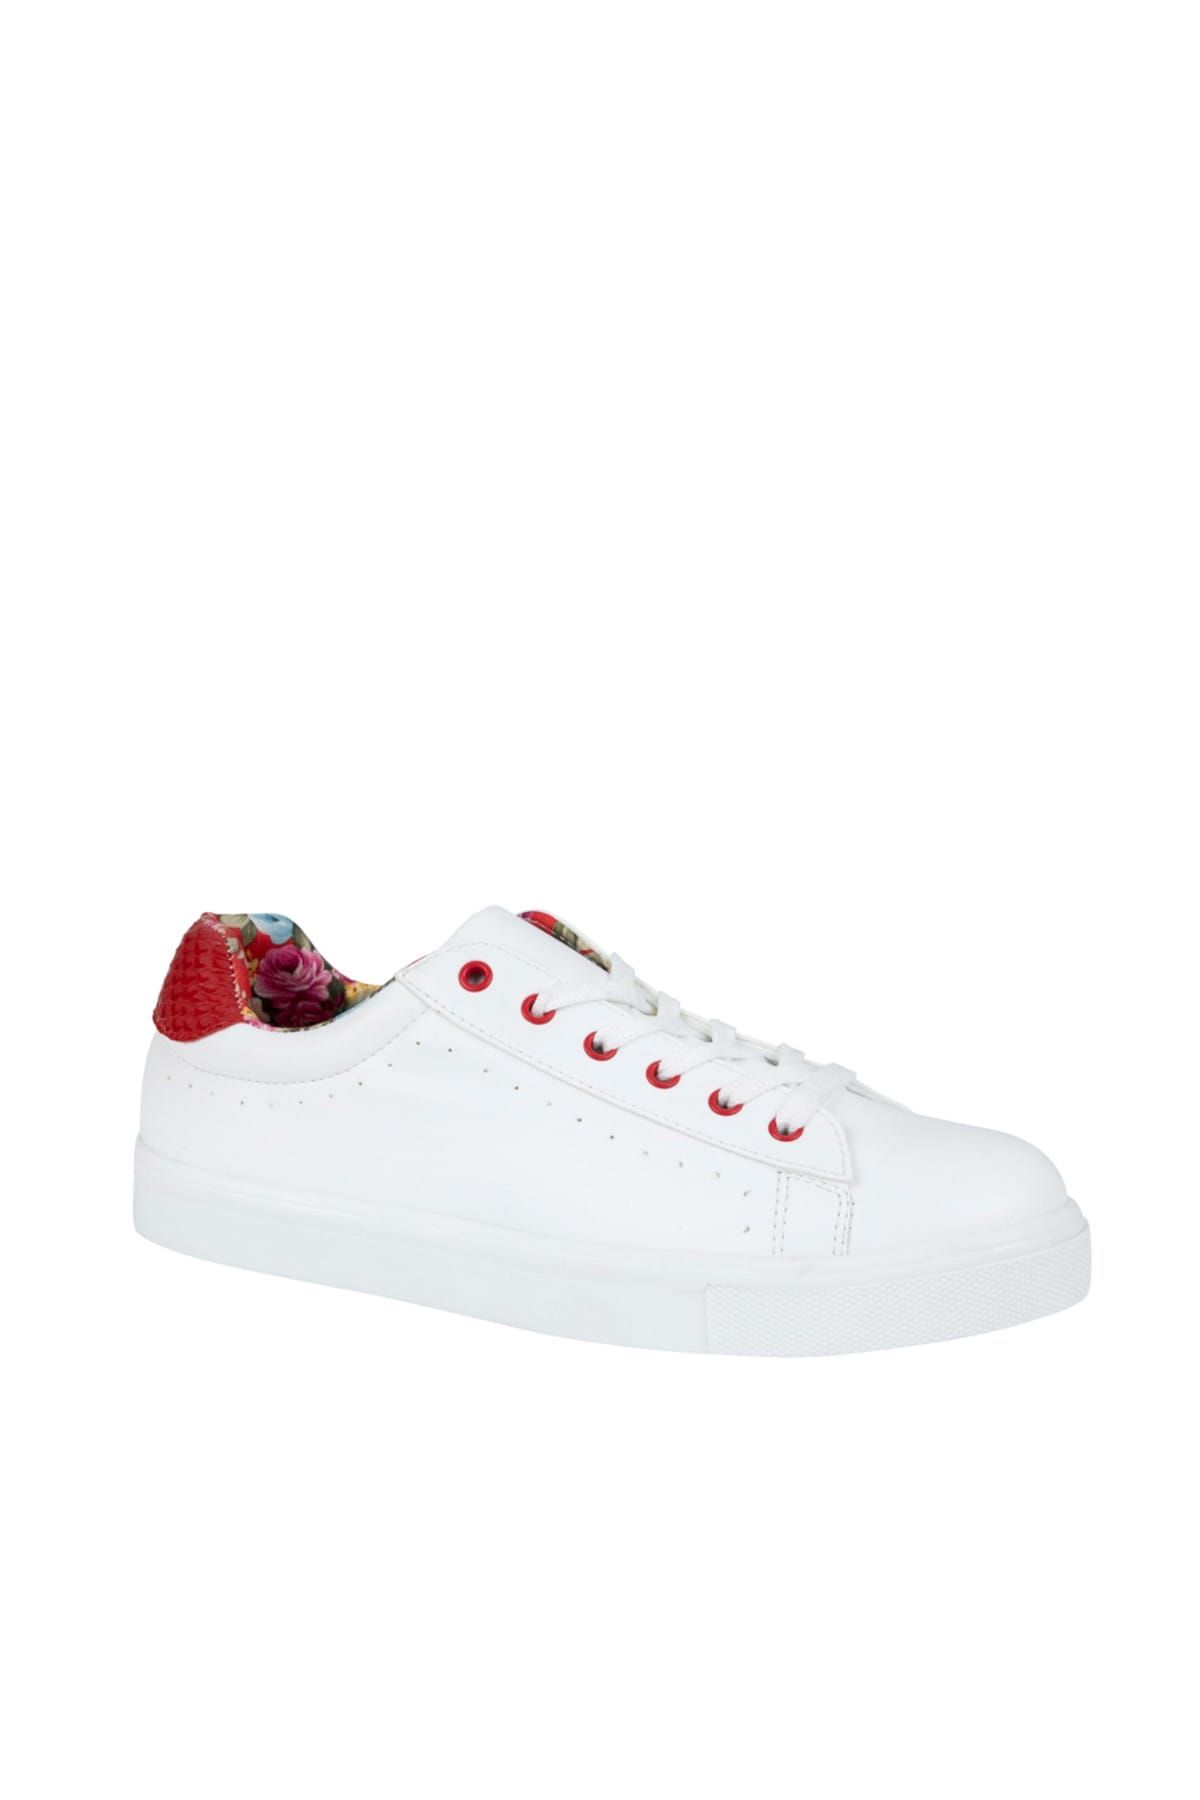 Mudo Kadın Beyaz Bağcıklı Sneaker Spor Ayakkabı 1199088